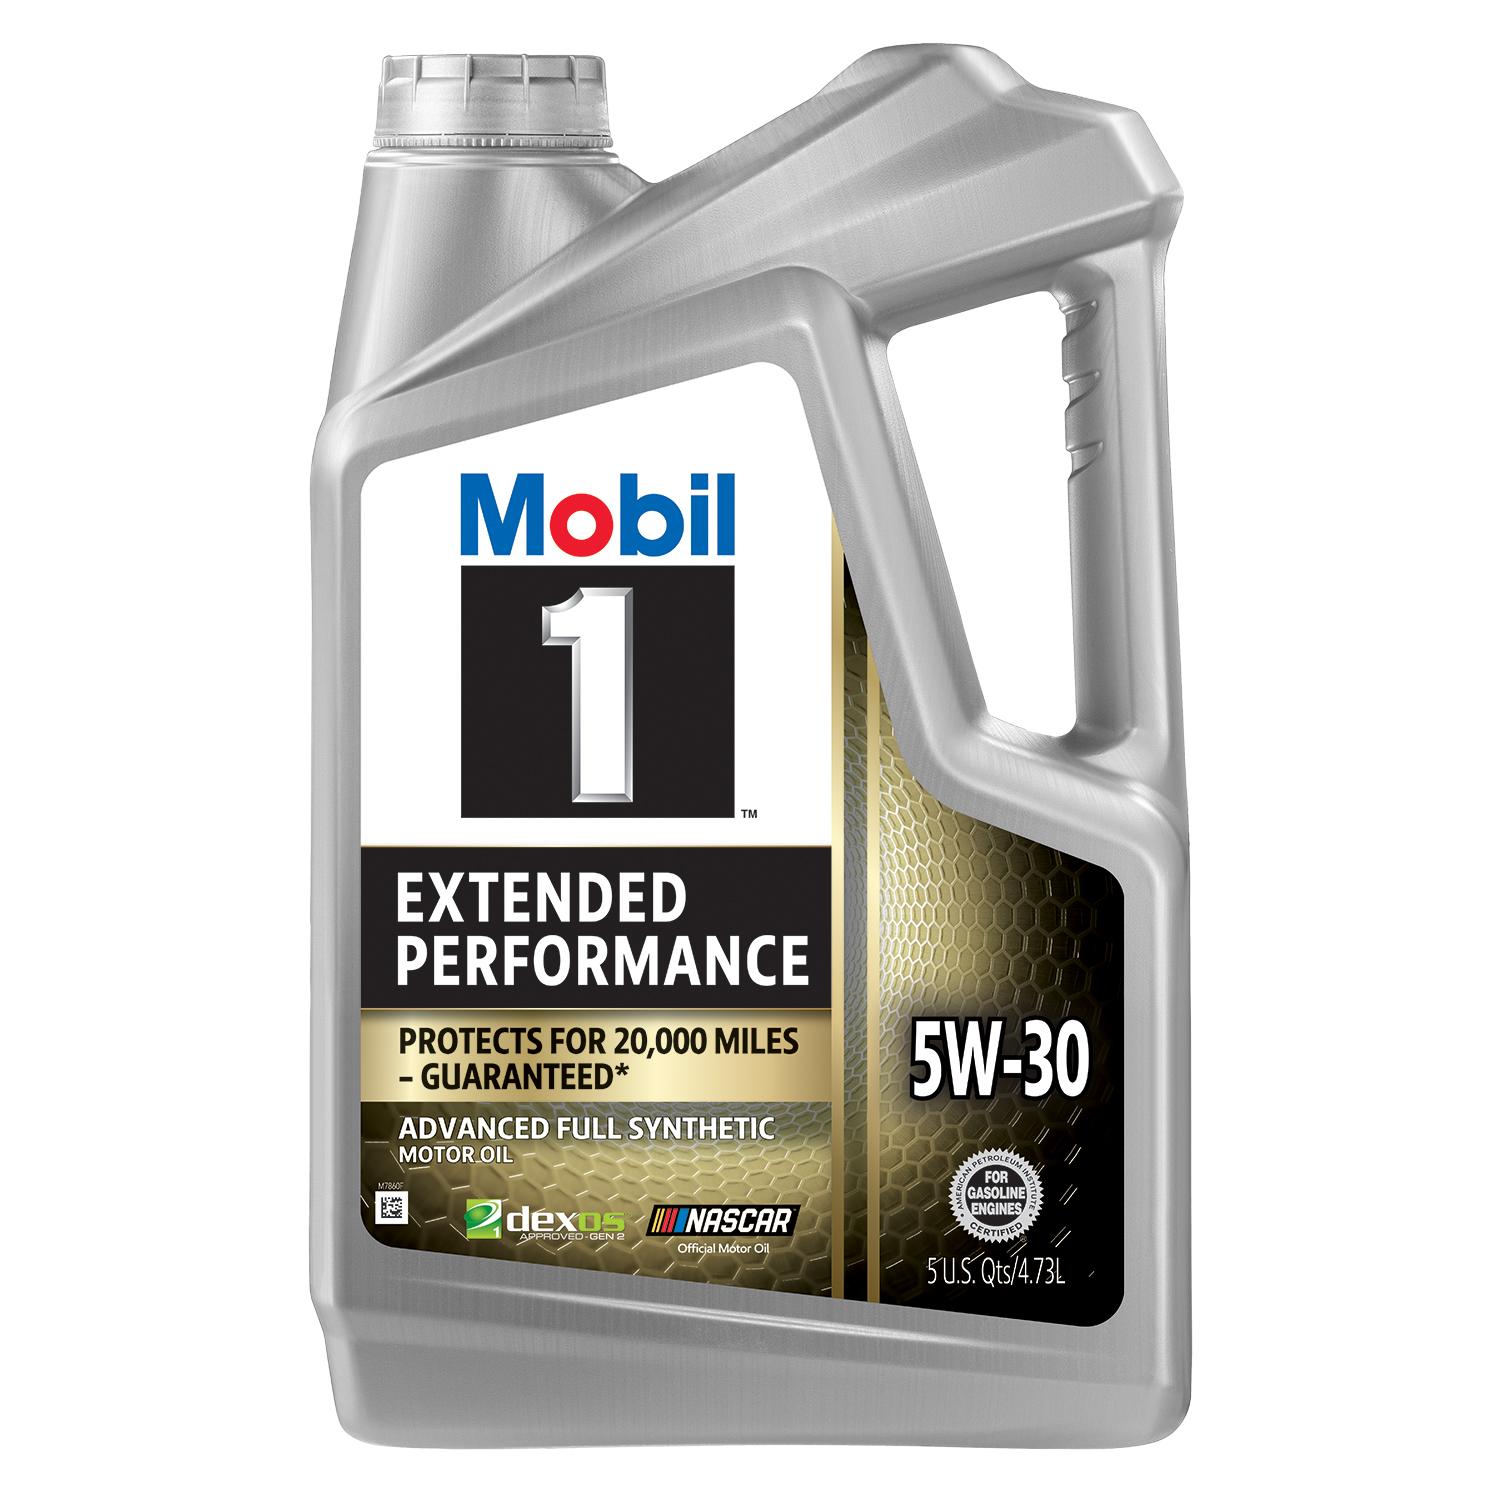 Mobil1 5-Quart Full Synthetic Extended Performance Motor Oil for $10.95